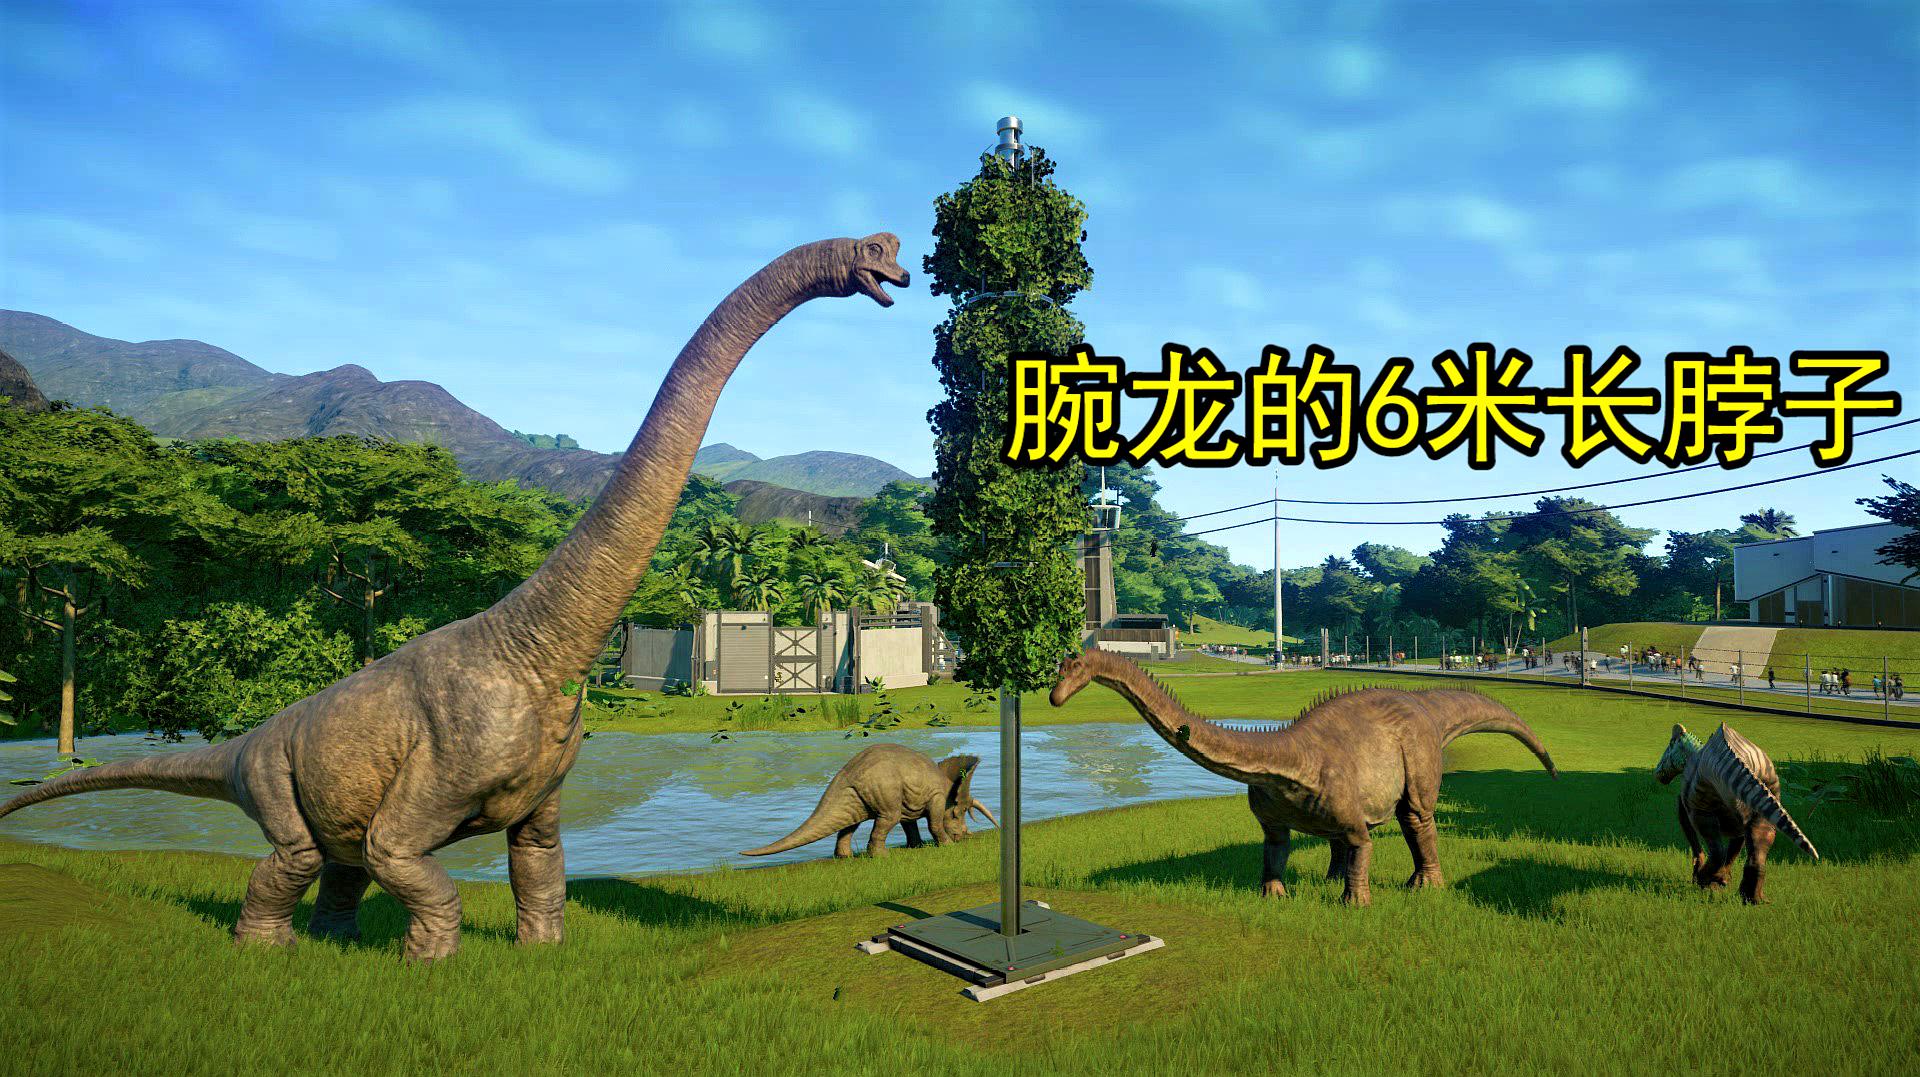 侏罗纪世界05:这种恐龙的脖子长达6米,长颈鹿和它没法比